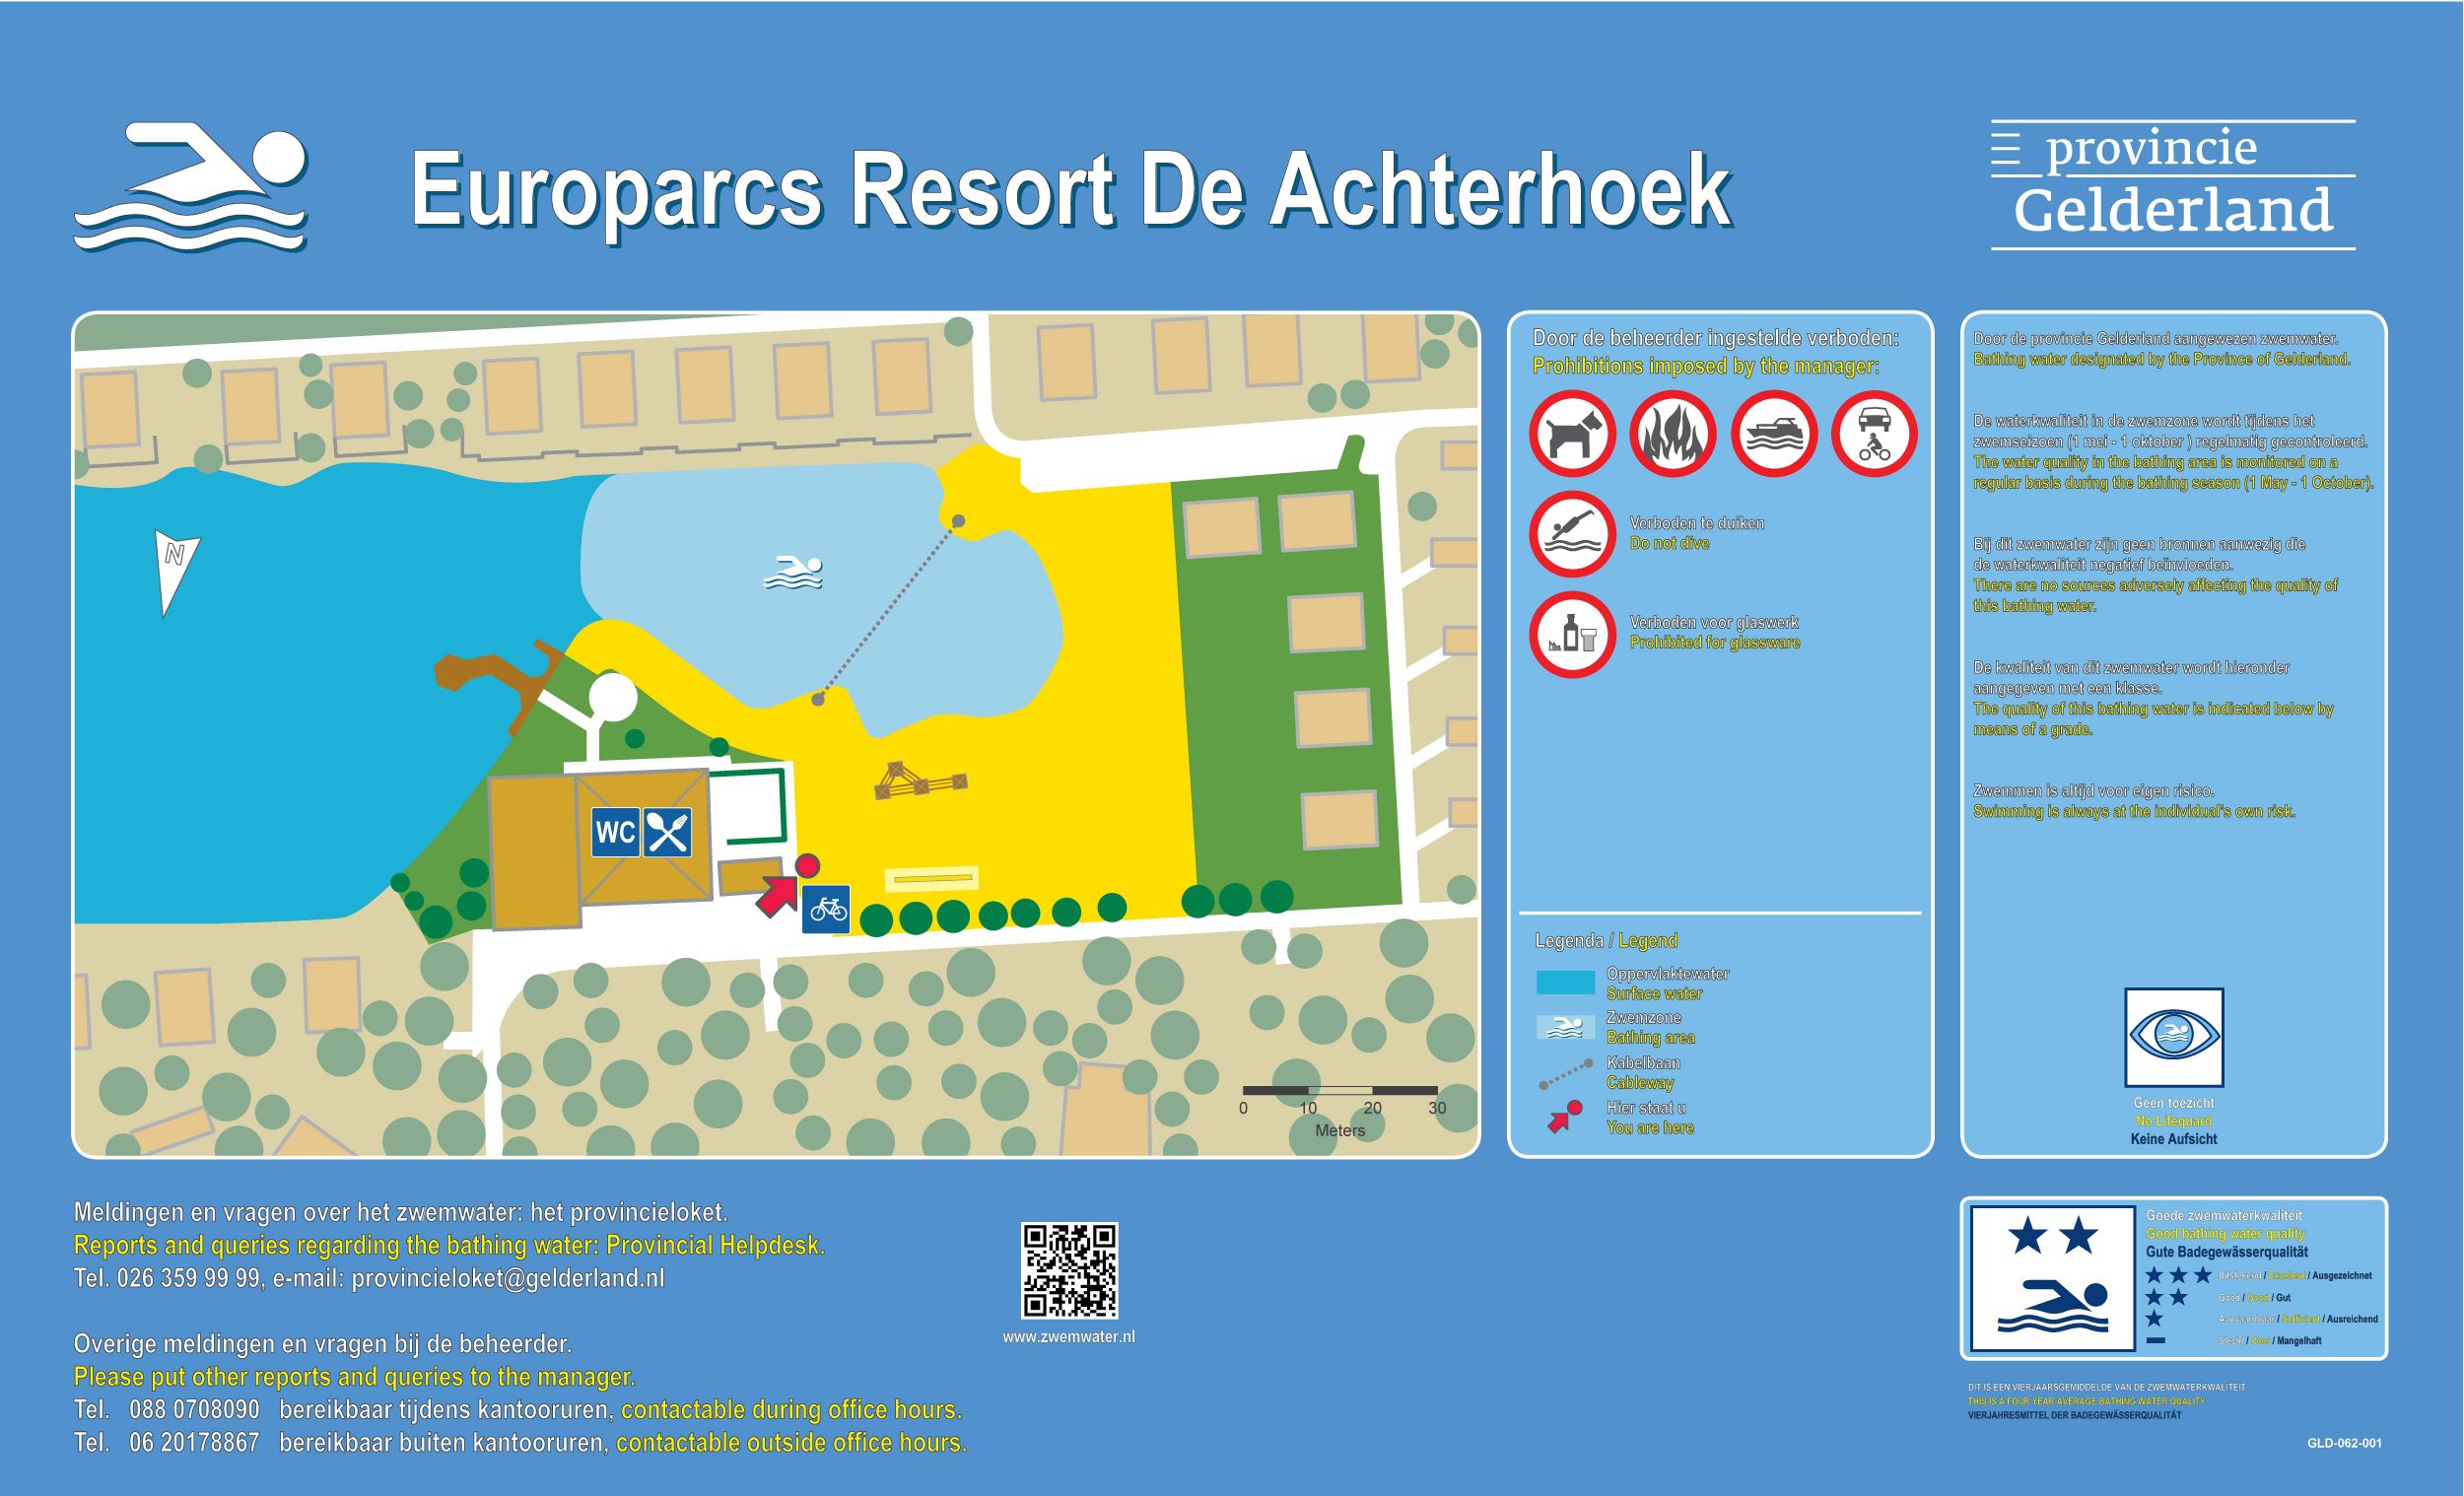 Het informatiebord bij zwemlocatie Europarcs Resort De Achterhoek